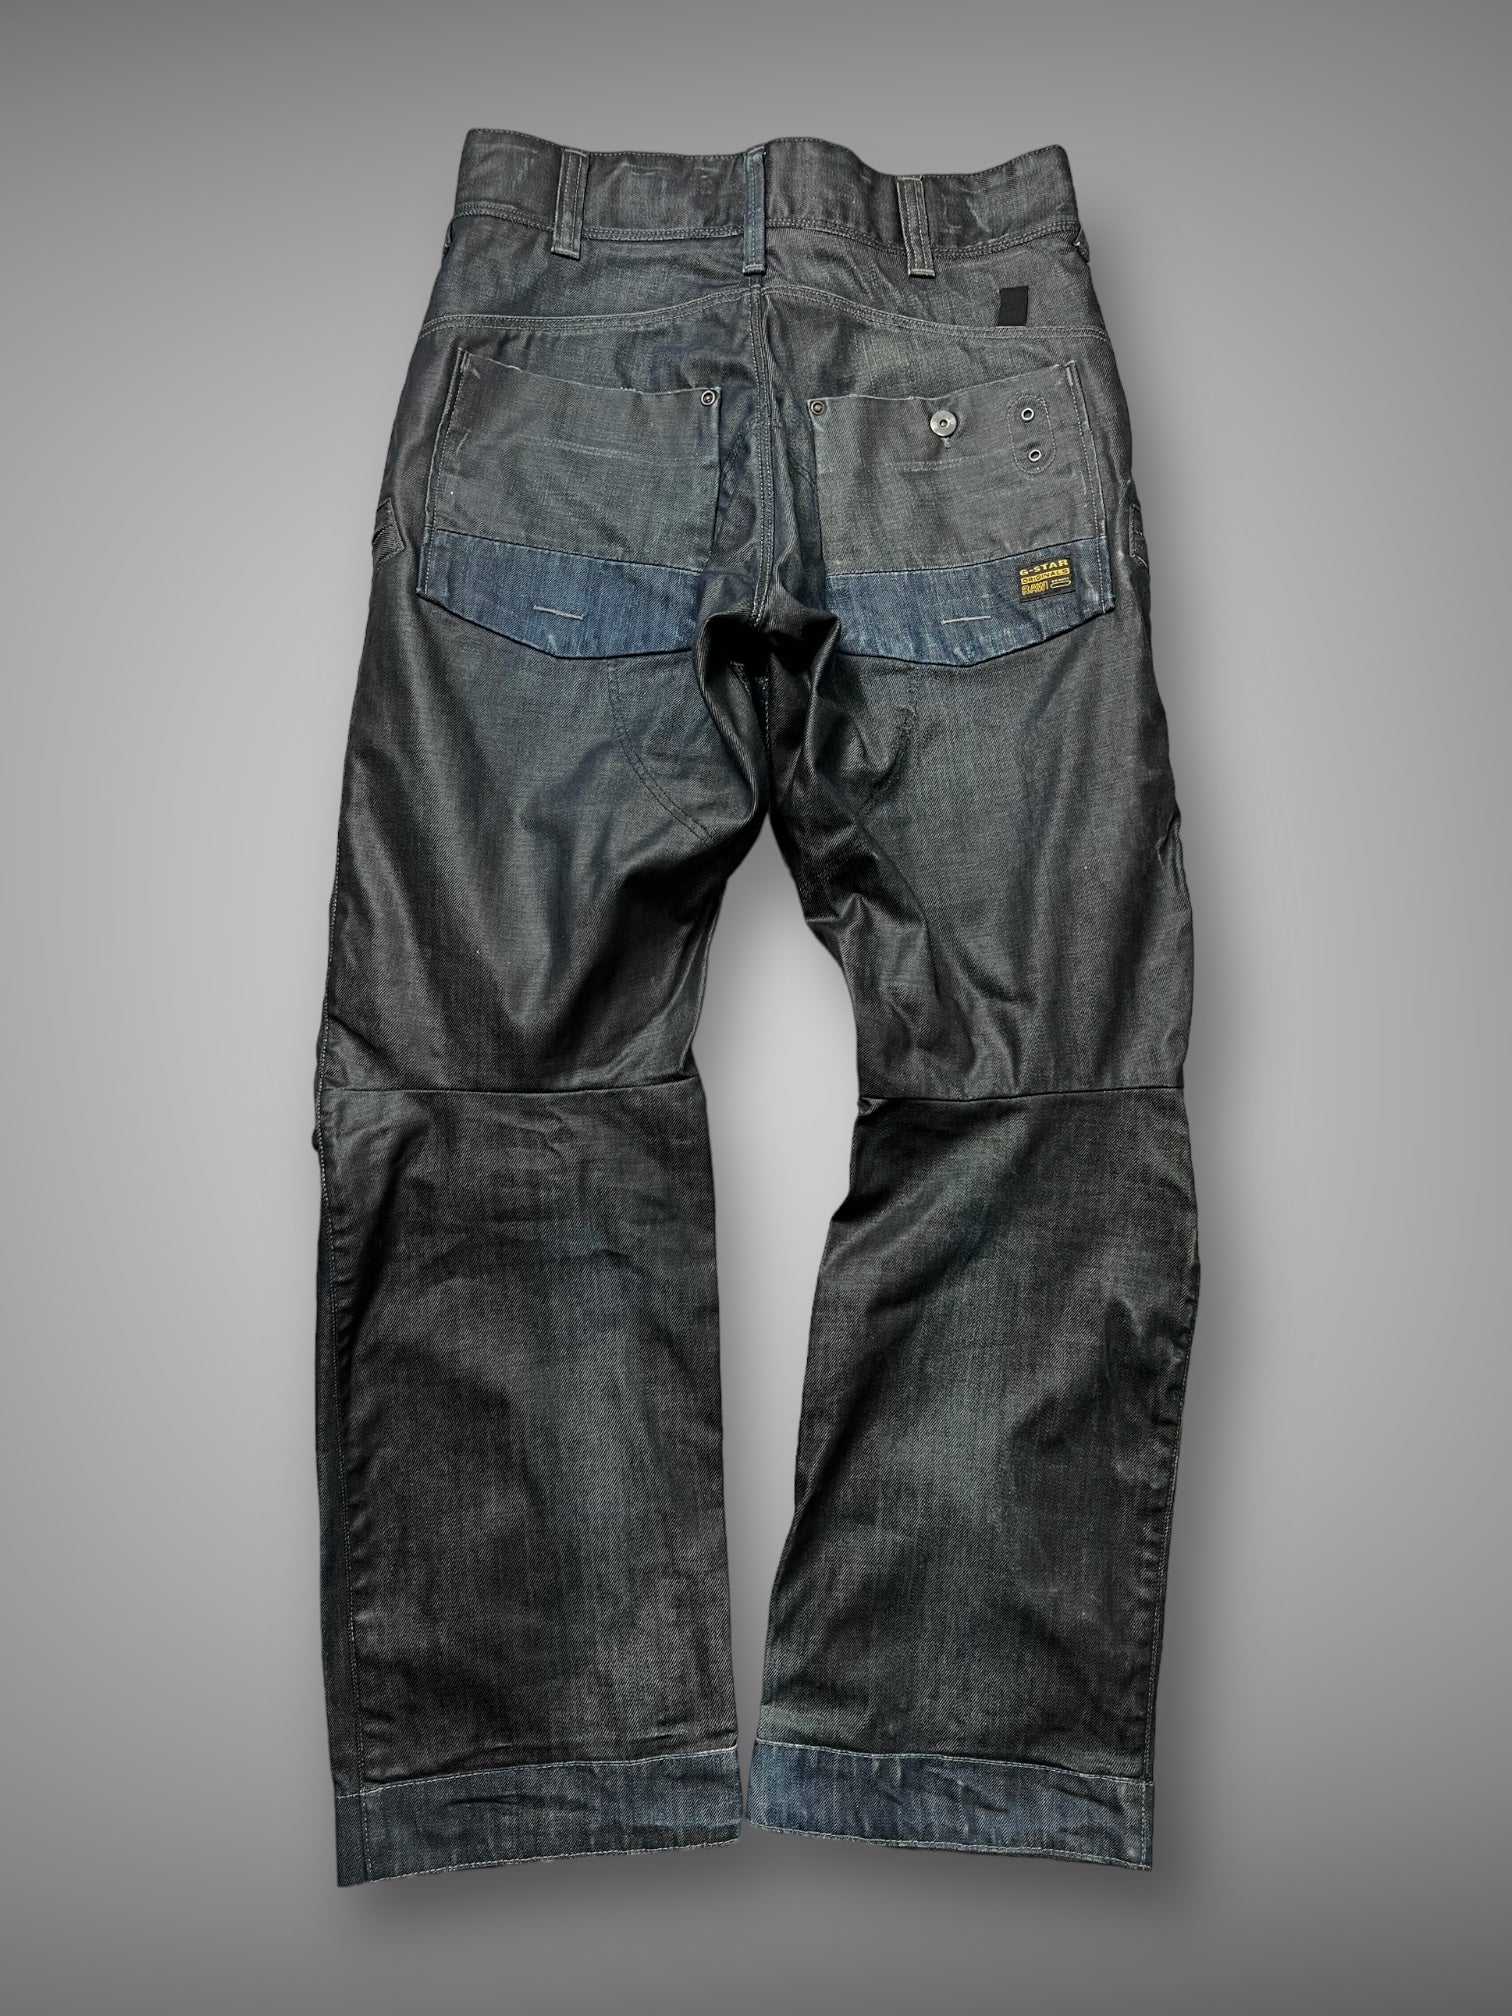 2008 deadstock G Star waxed denim jeans 32x31”